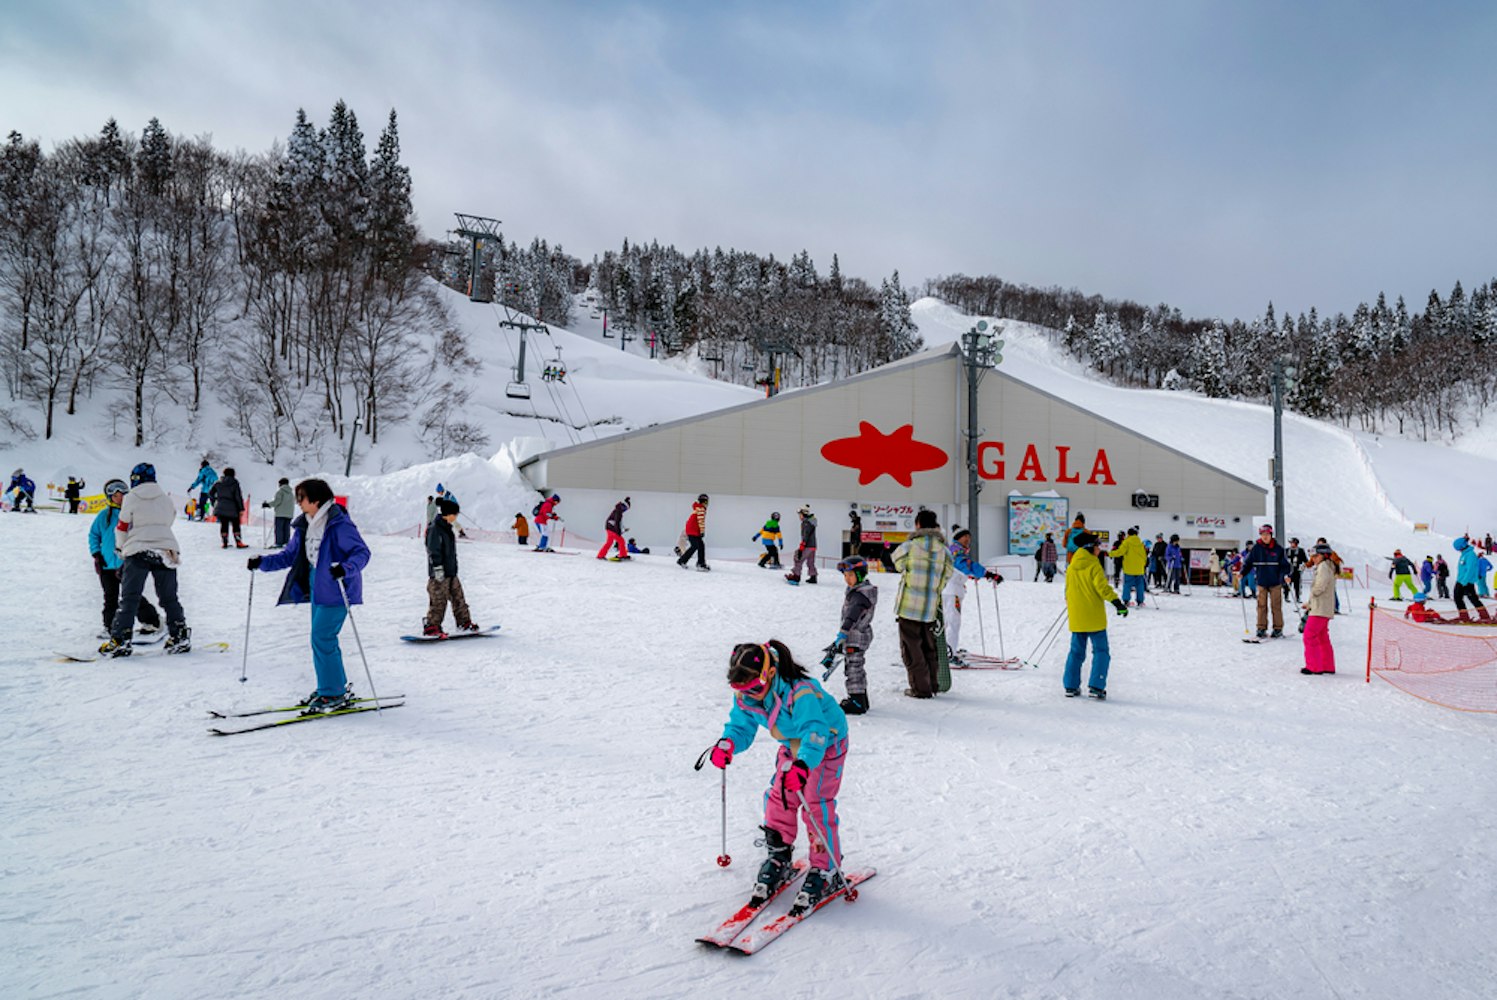 Ski Slopes of Gala Yuzawa Snow Resort